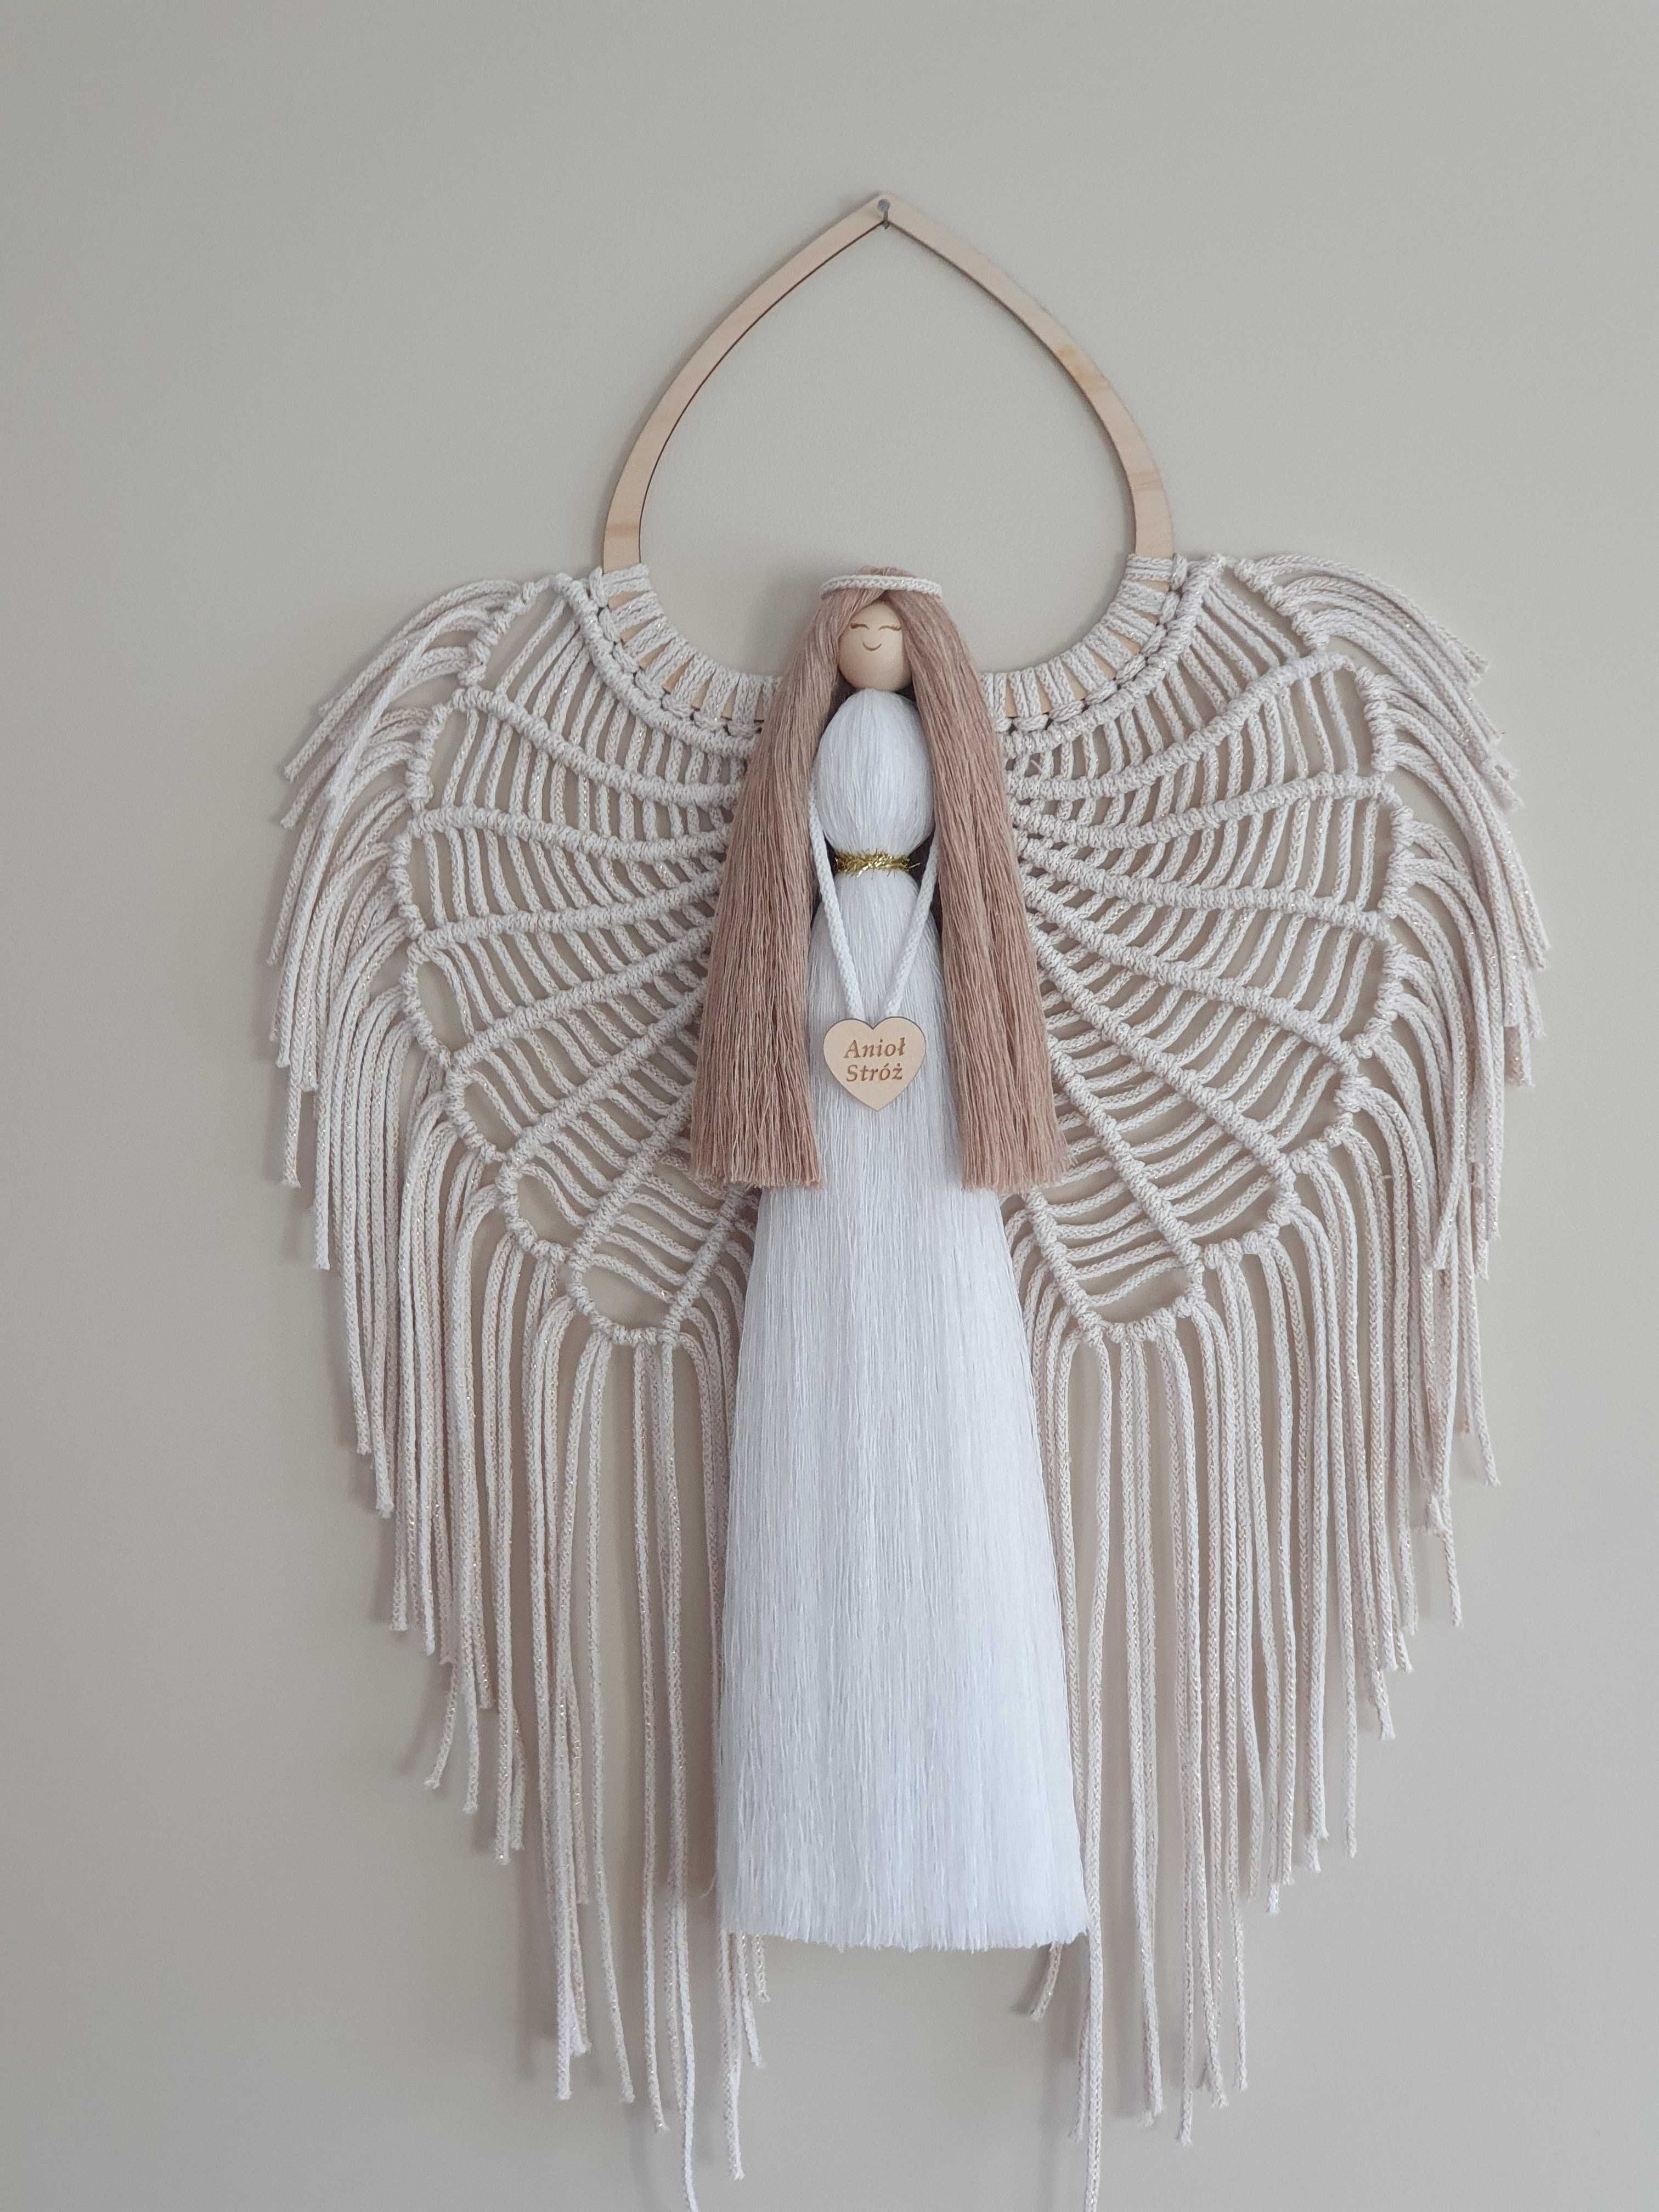 Anioł stróż w bieli, makramowy anioł. Komunia, chrzest. Wysyłka